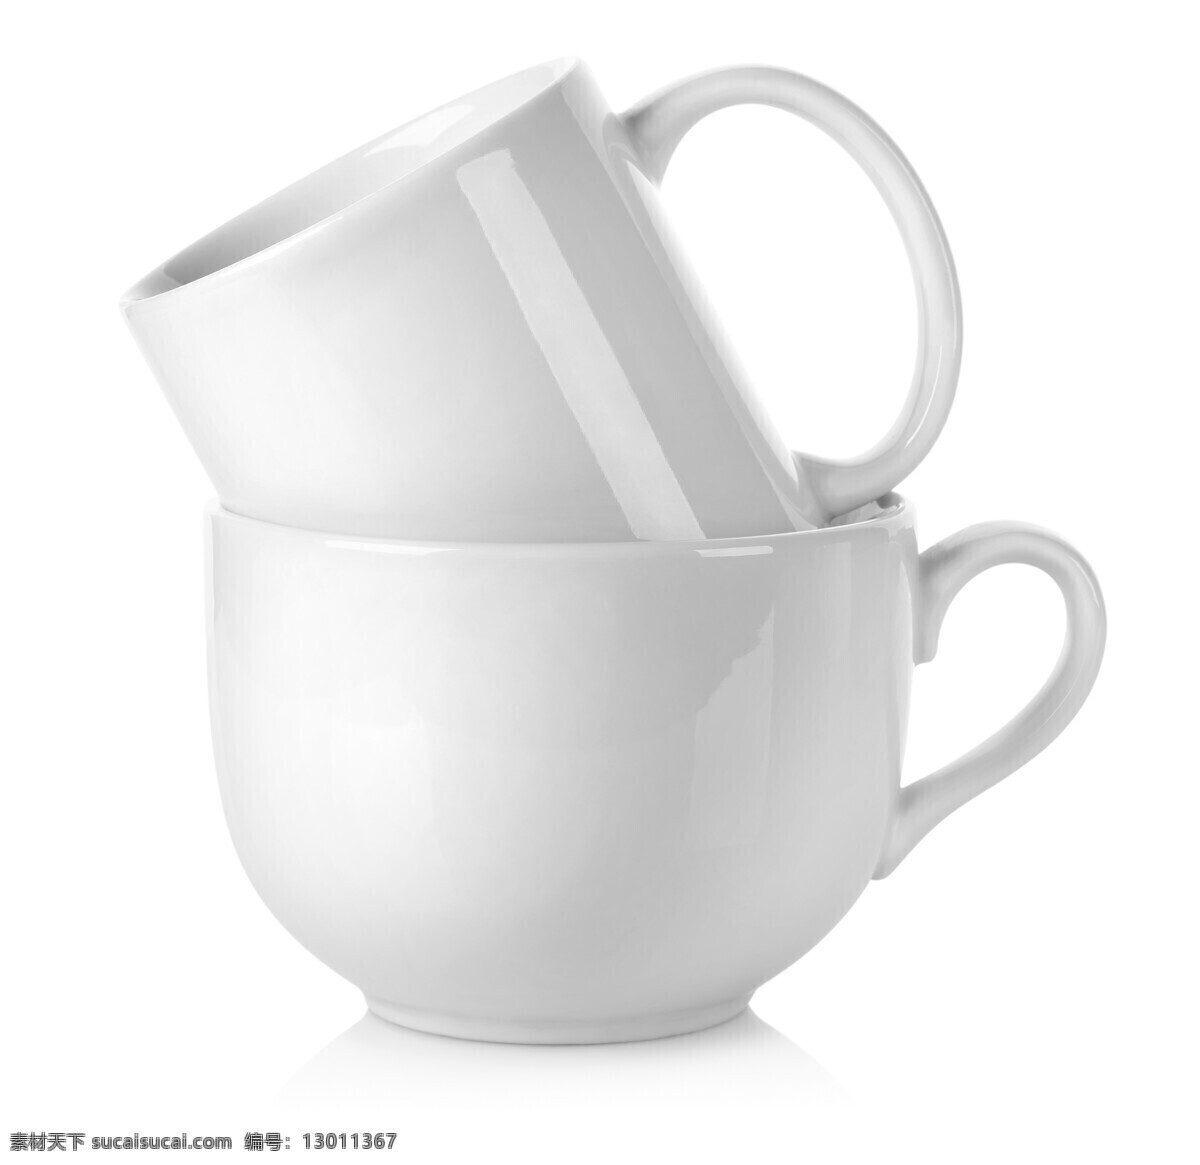 白色 咖啡 杯子 茶杯 白色咖啡杯子 陶瓷杯子 日用品 日常用品 生活用品 生活百科